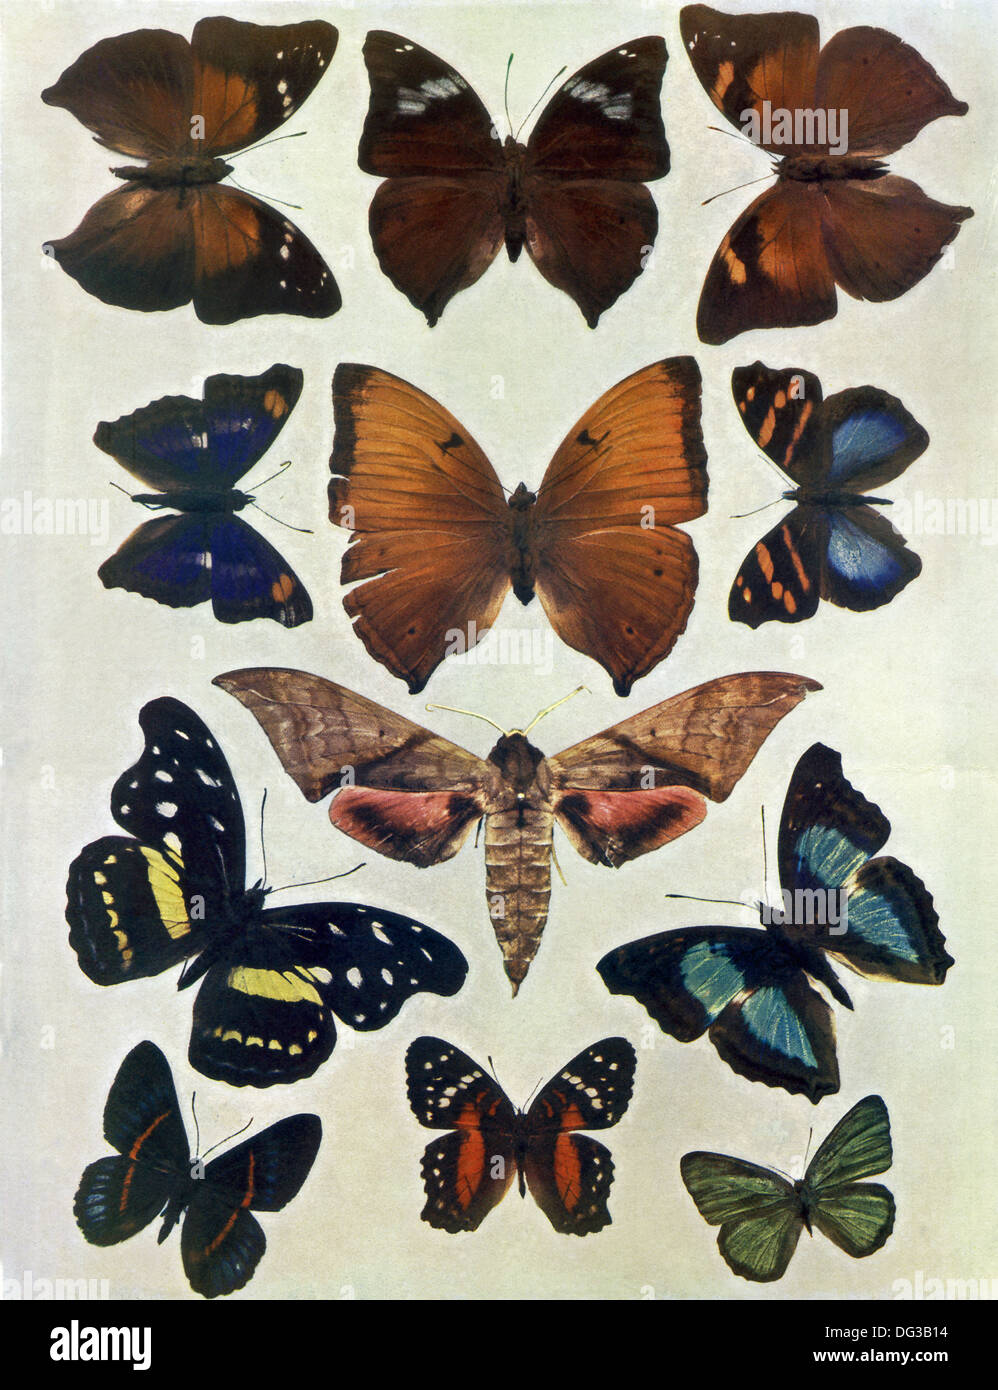 Diese Illustration erschien Penrose bildliche jährliche von 1900. Dieses Bild zeigt 12 verschiedene Exemplare von Schmetterlingen. Stockfoto